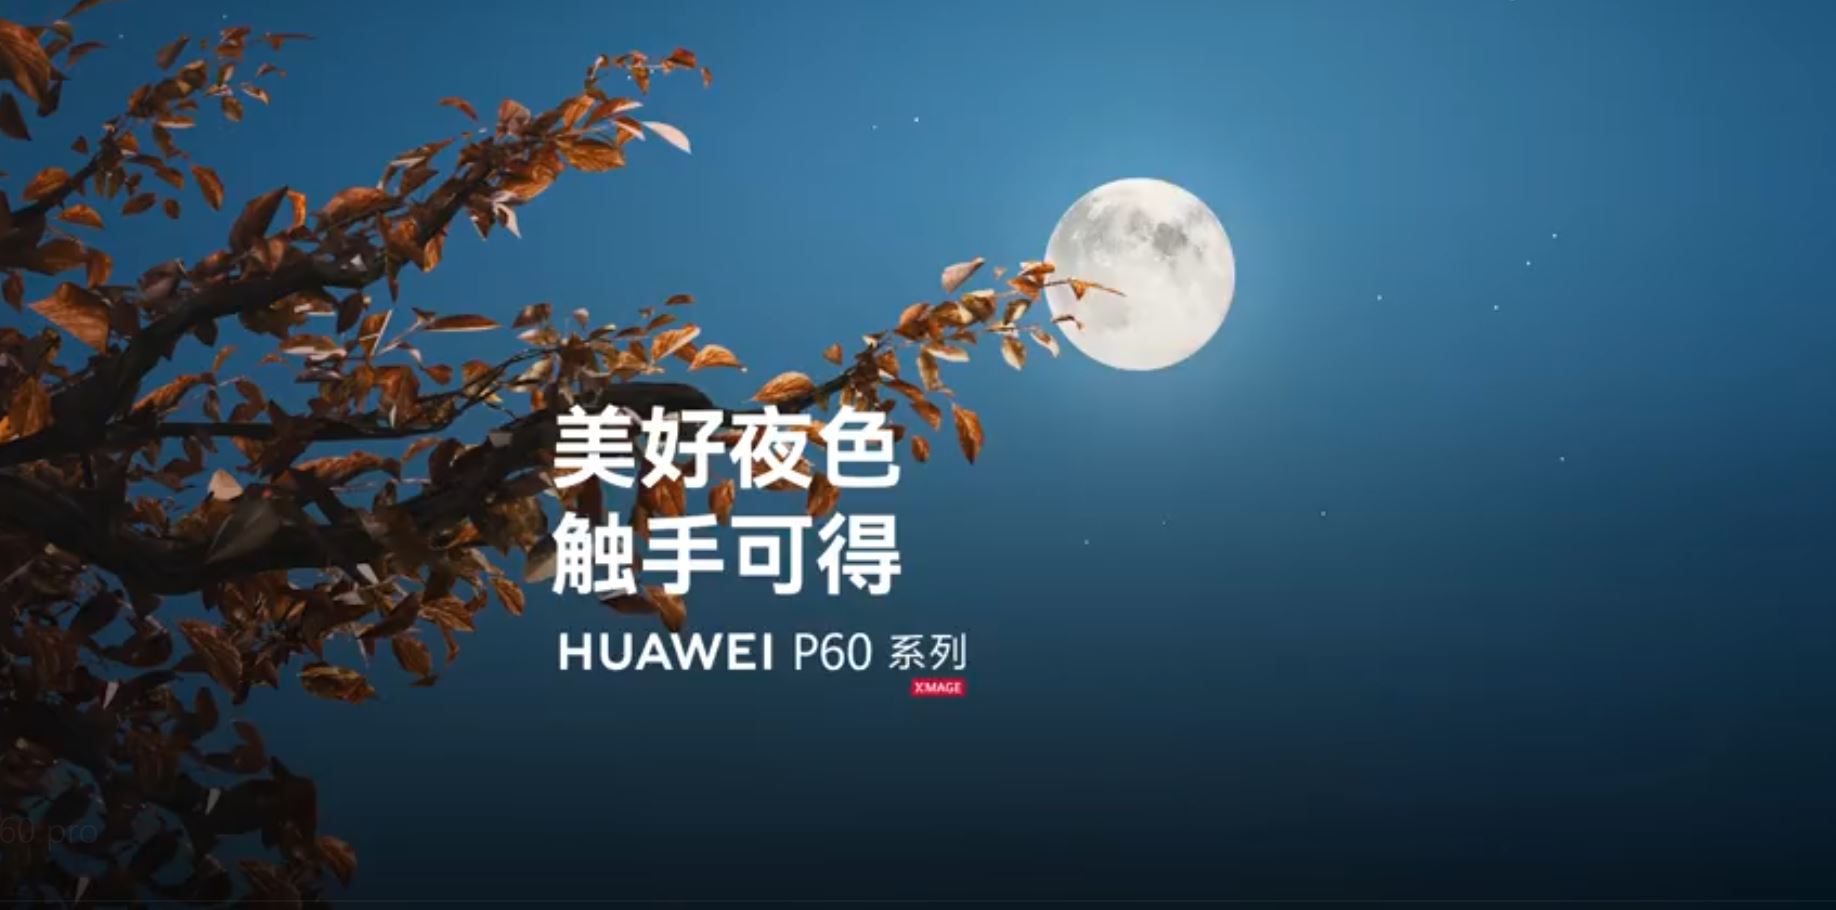 เชิญชมทีเซอร์อวดกล้องซูมของ Huawei P60 Pro ก่อนจะเปิดตัว 23 มี.ค.นี้!